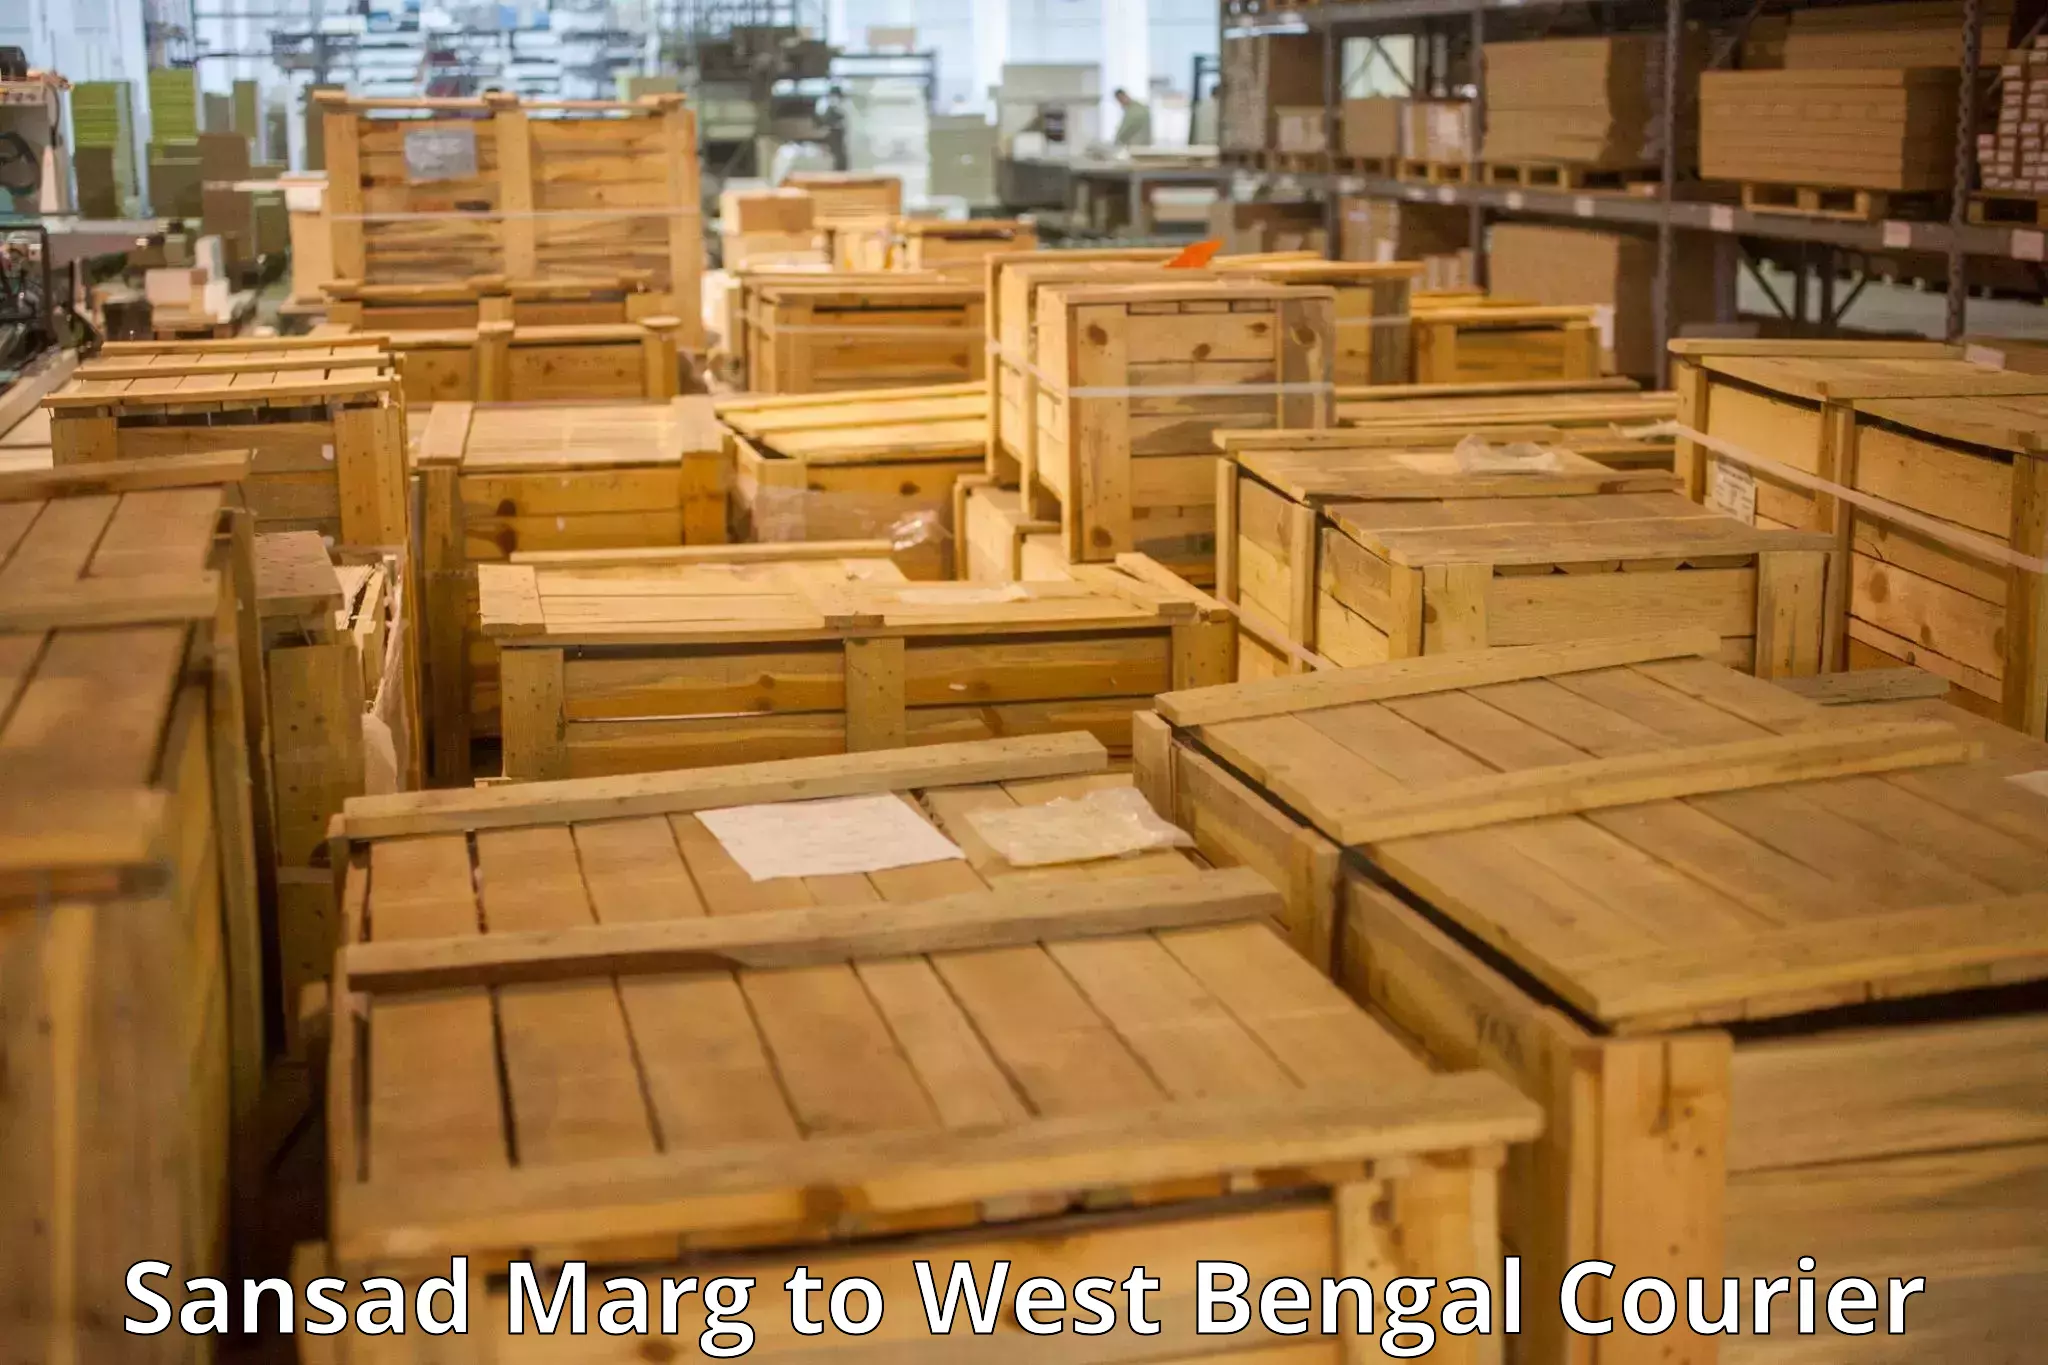 Door-to-door baggage service Sansad Marg to West Bengal